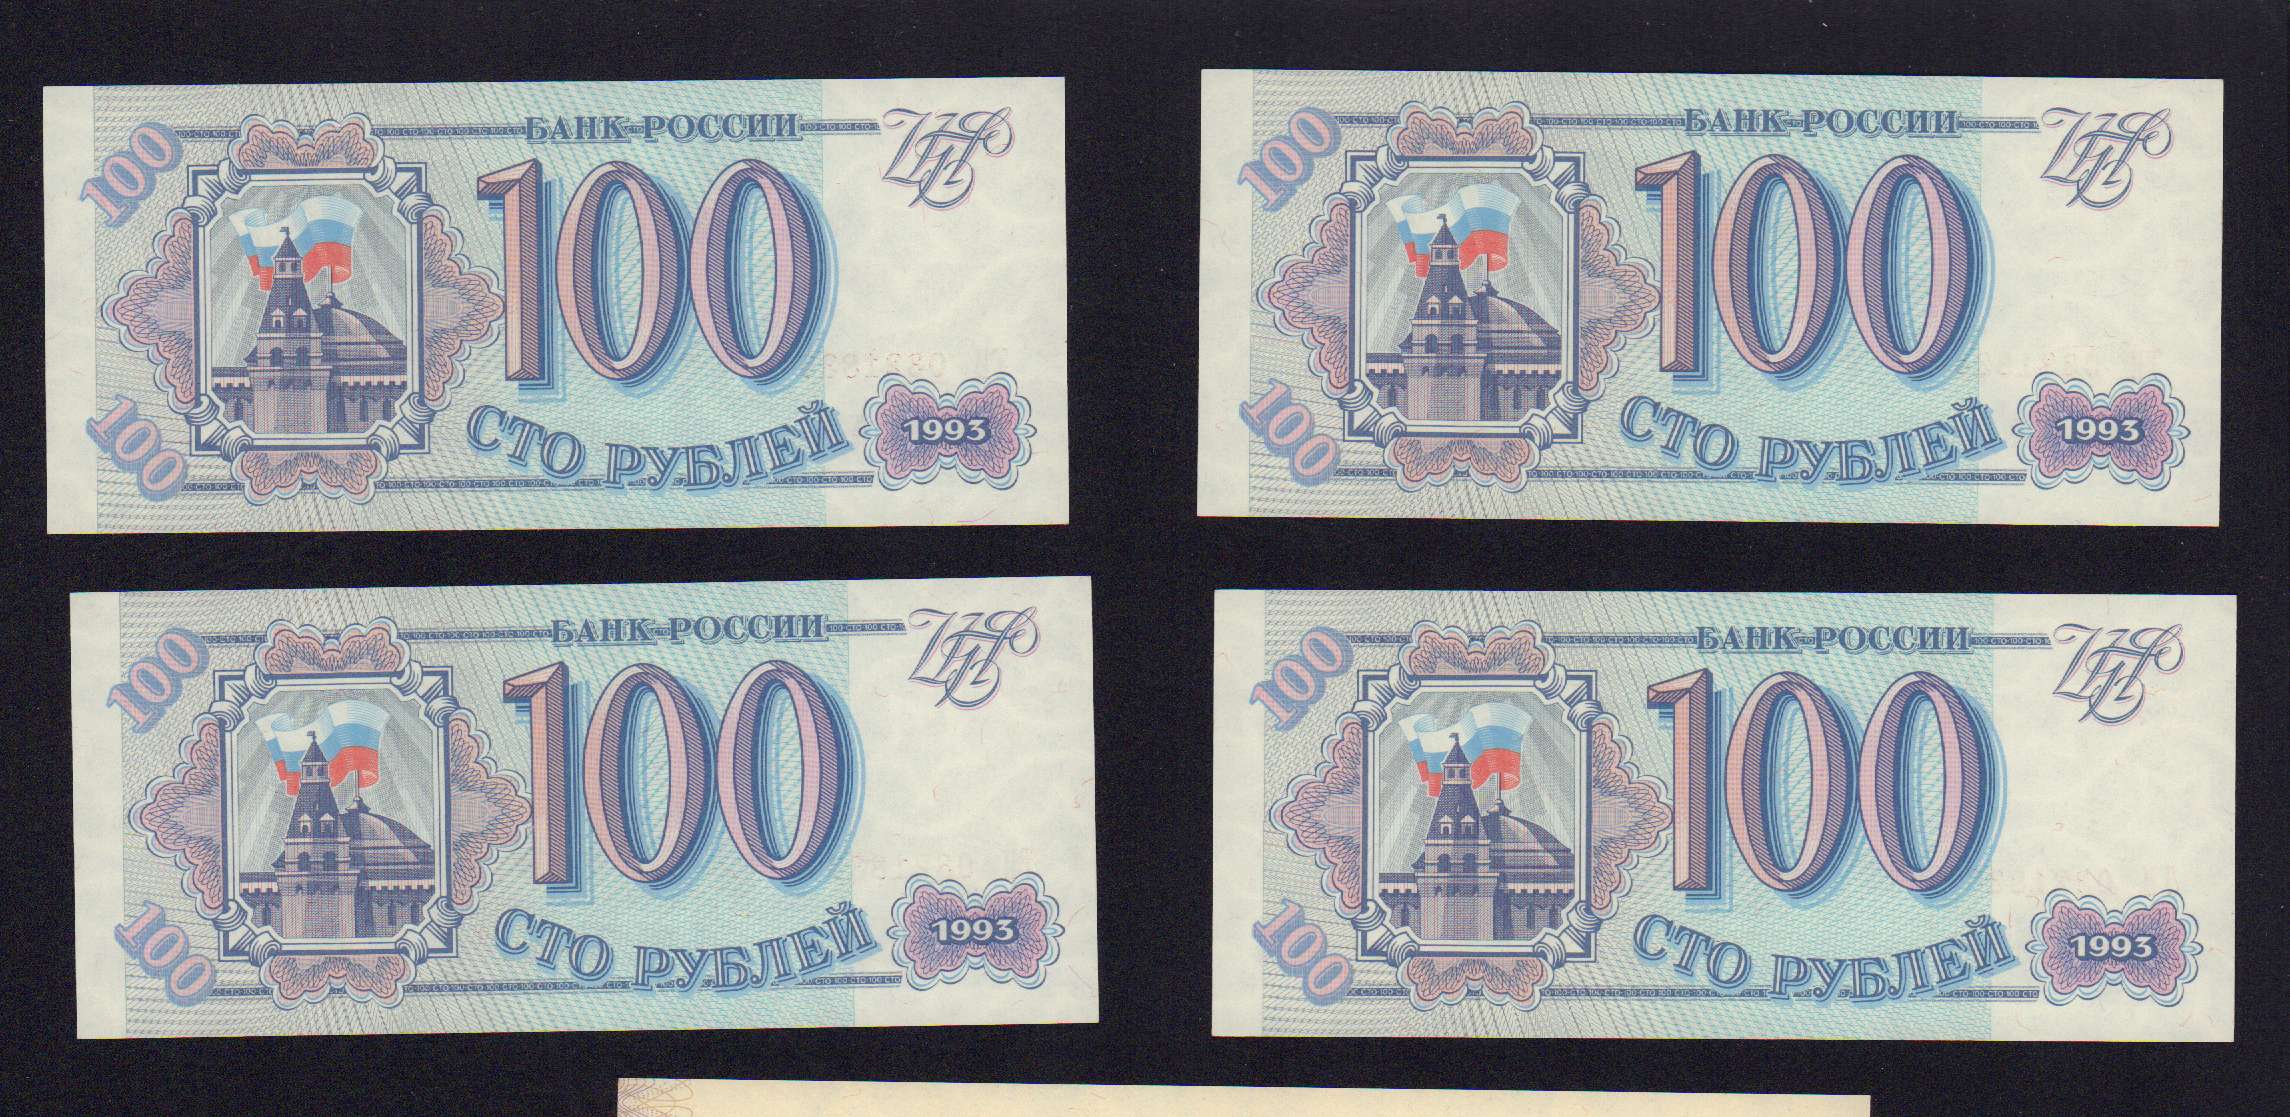 Пятьсот четыре рубля. Боны 1993 года Россия.